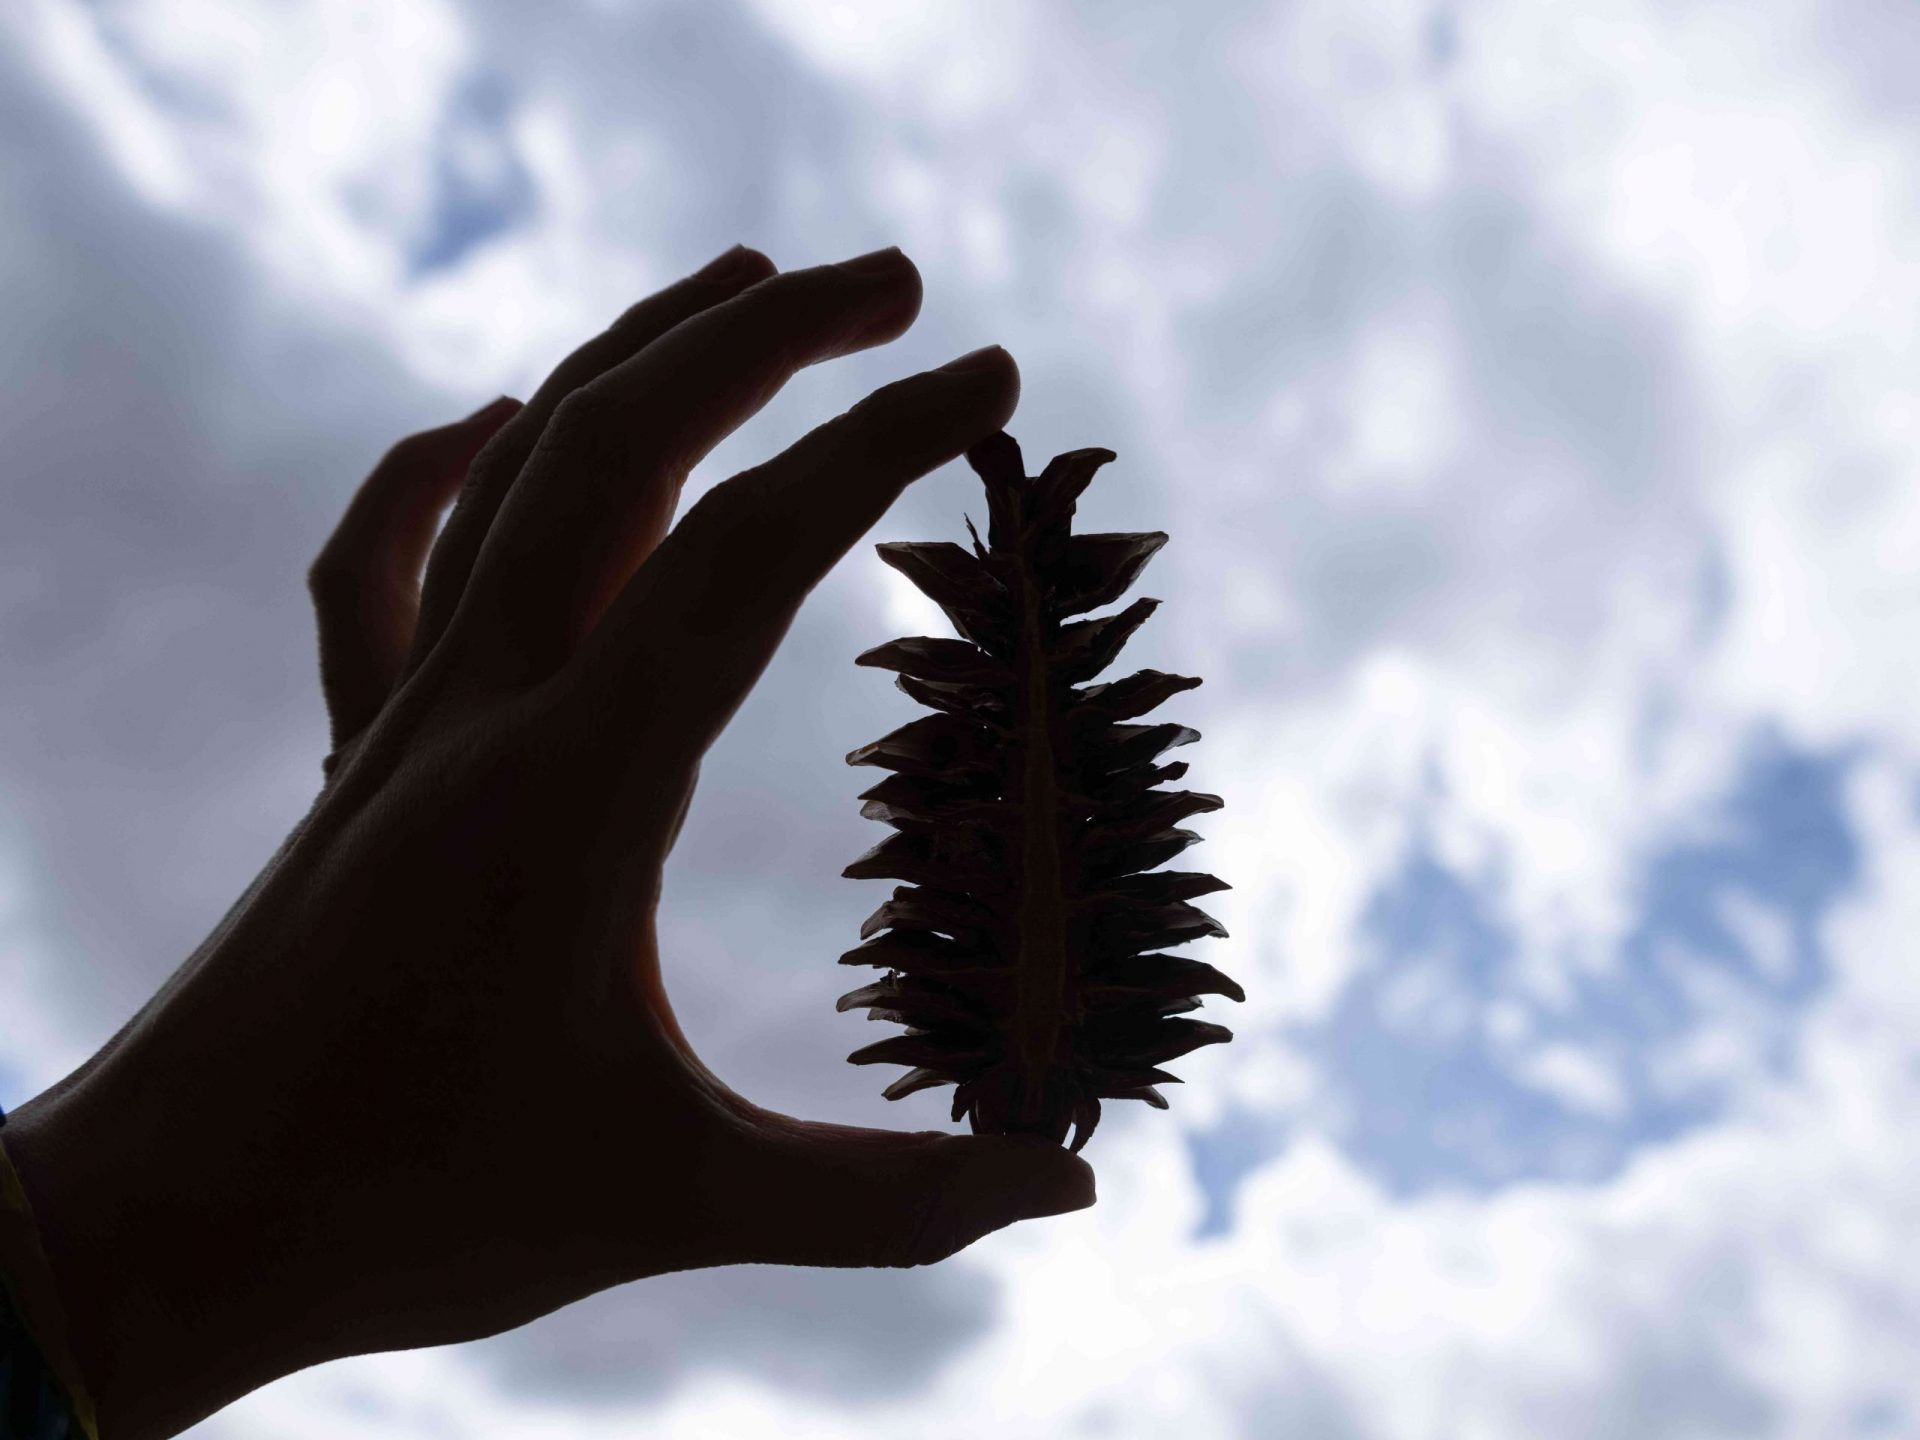 silueta de una mano sujetando una pequeña piña contra un cielo azul nublado